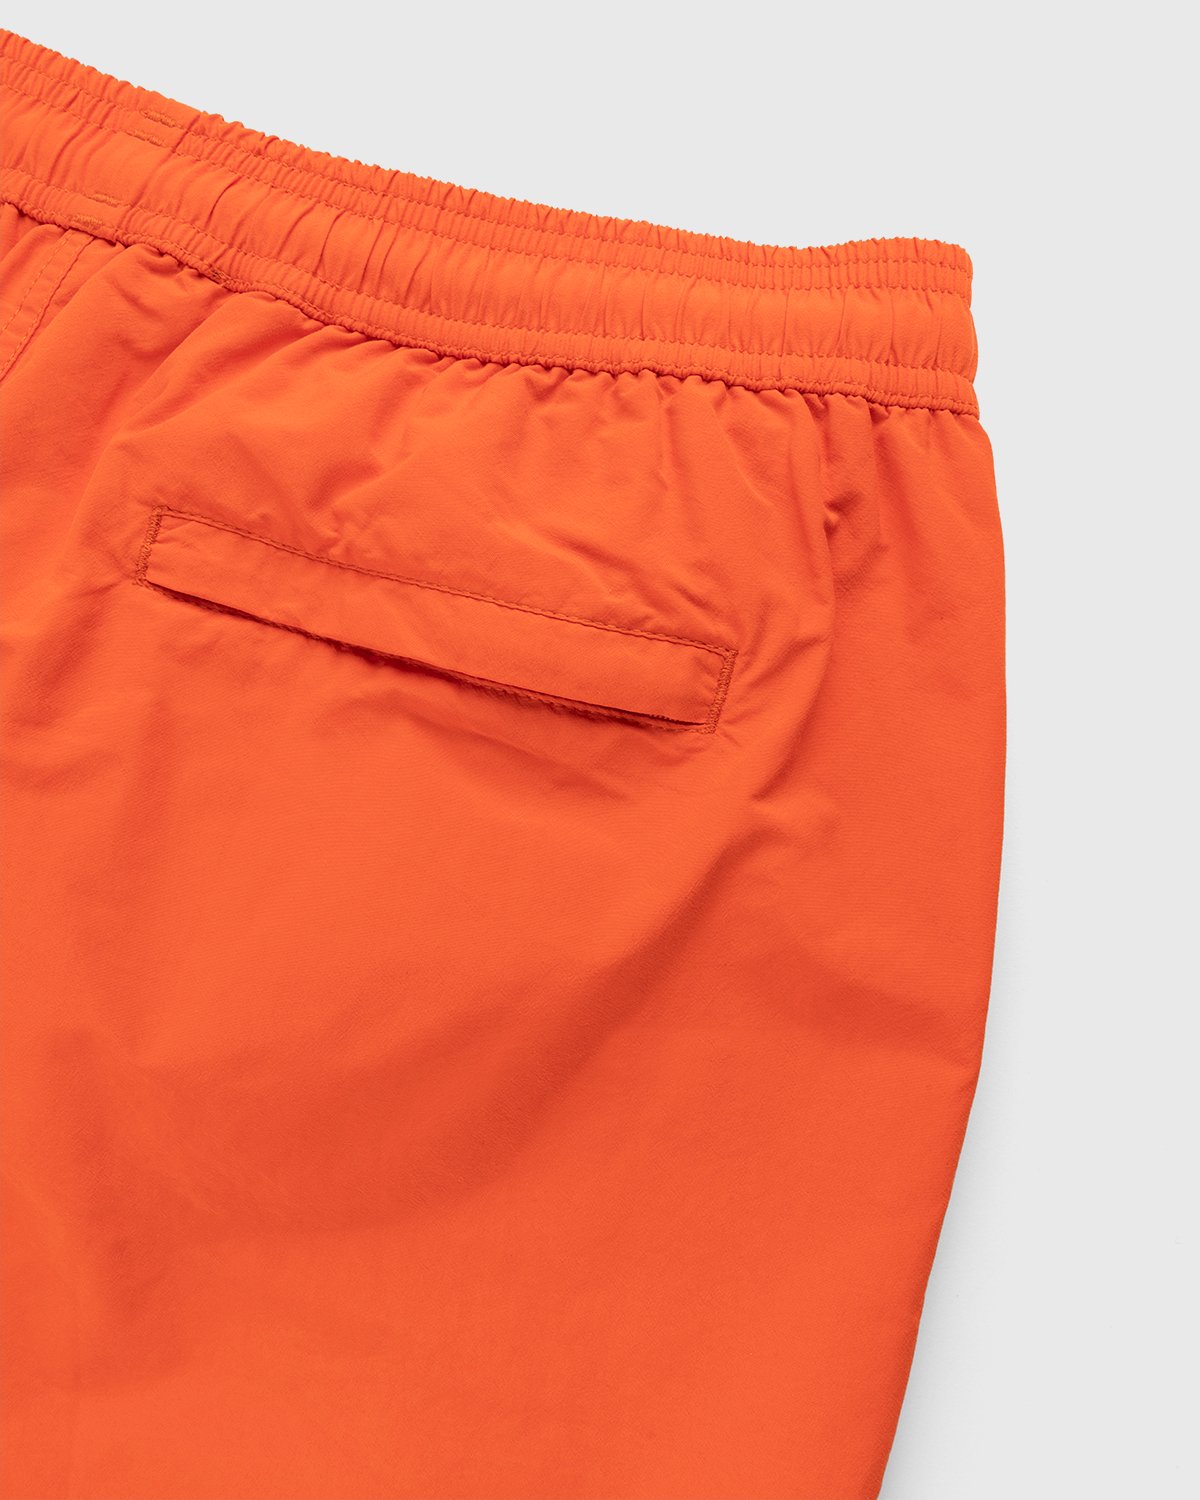 A-Cold-Wall* - Natant Nylon Short Rich Orange - Clothing - Orange - Image 3